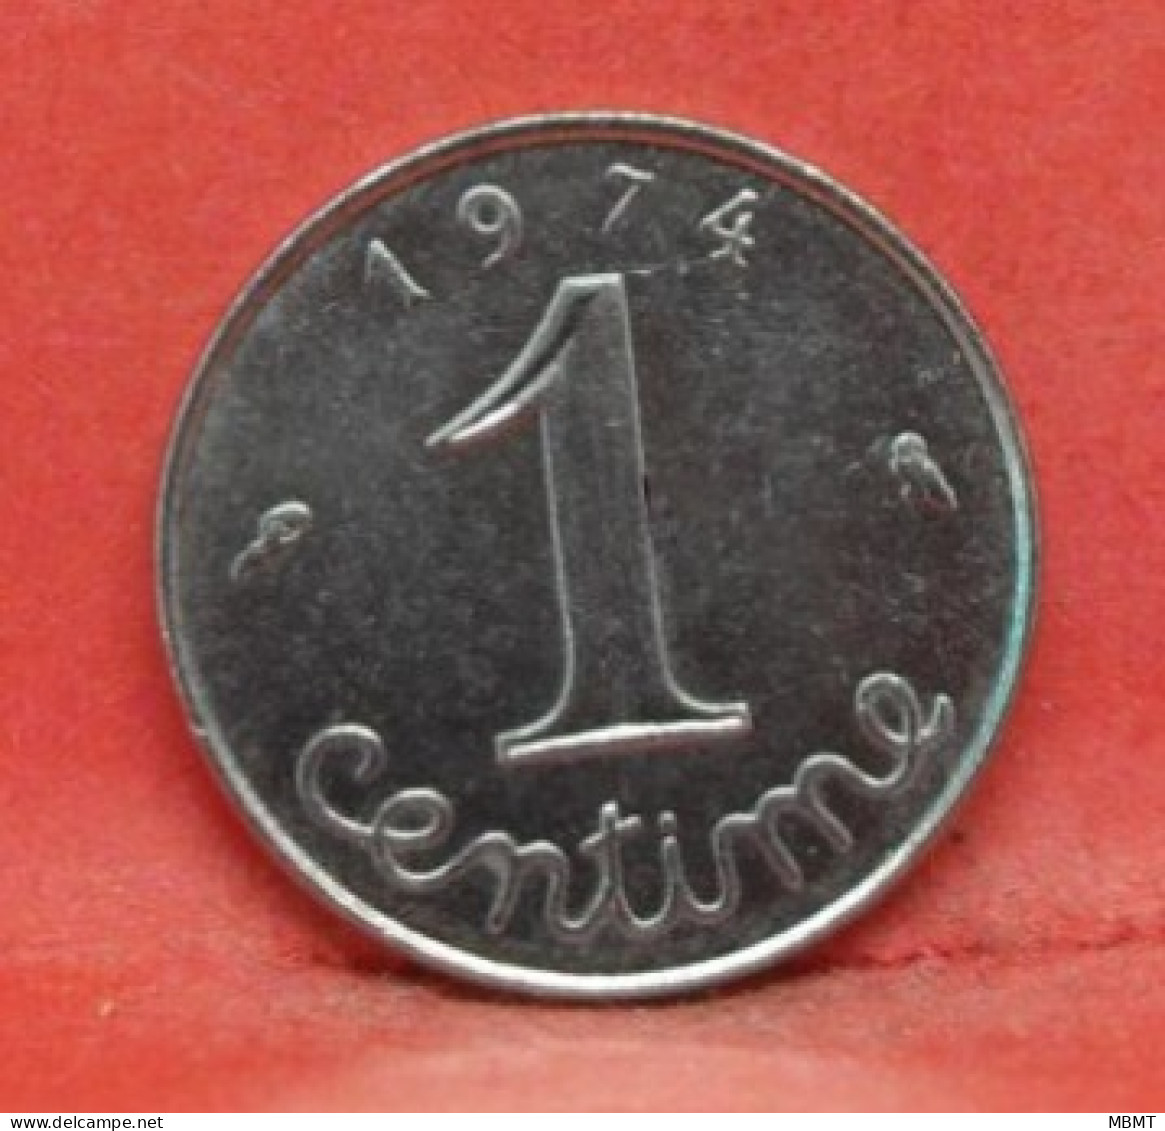 1 Centime épi 1974 - SUP - Monnaie France - Article N°27 - 1 Centime